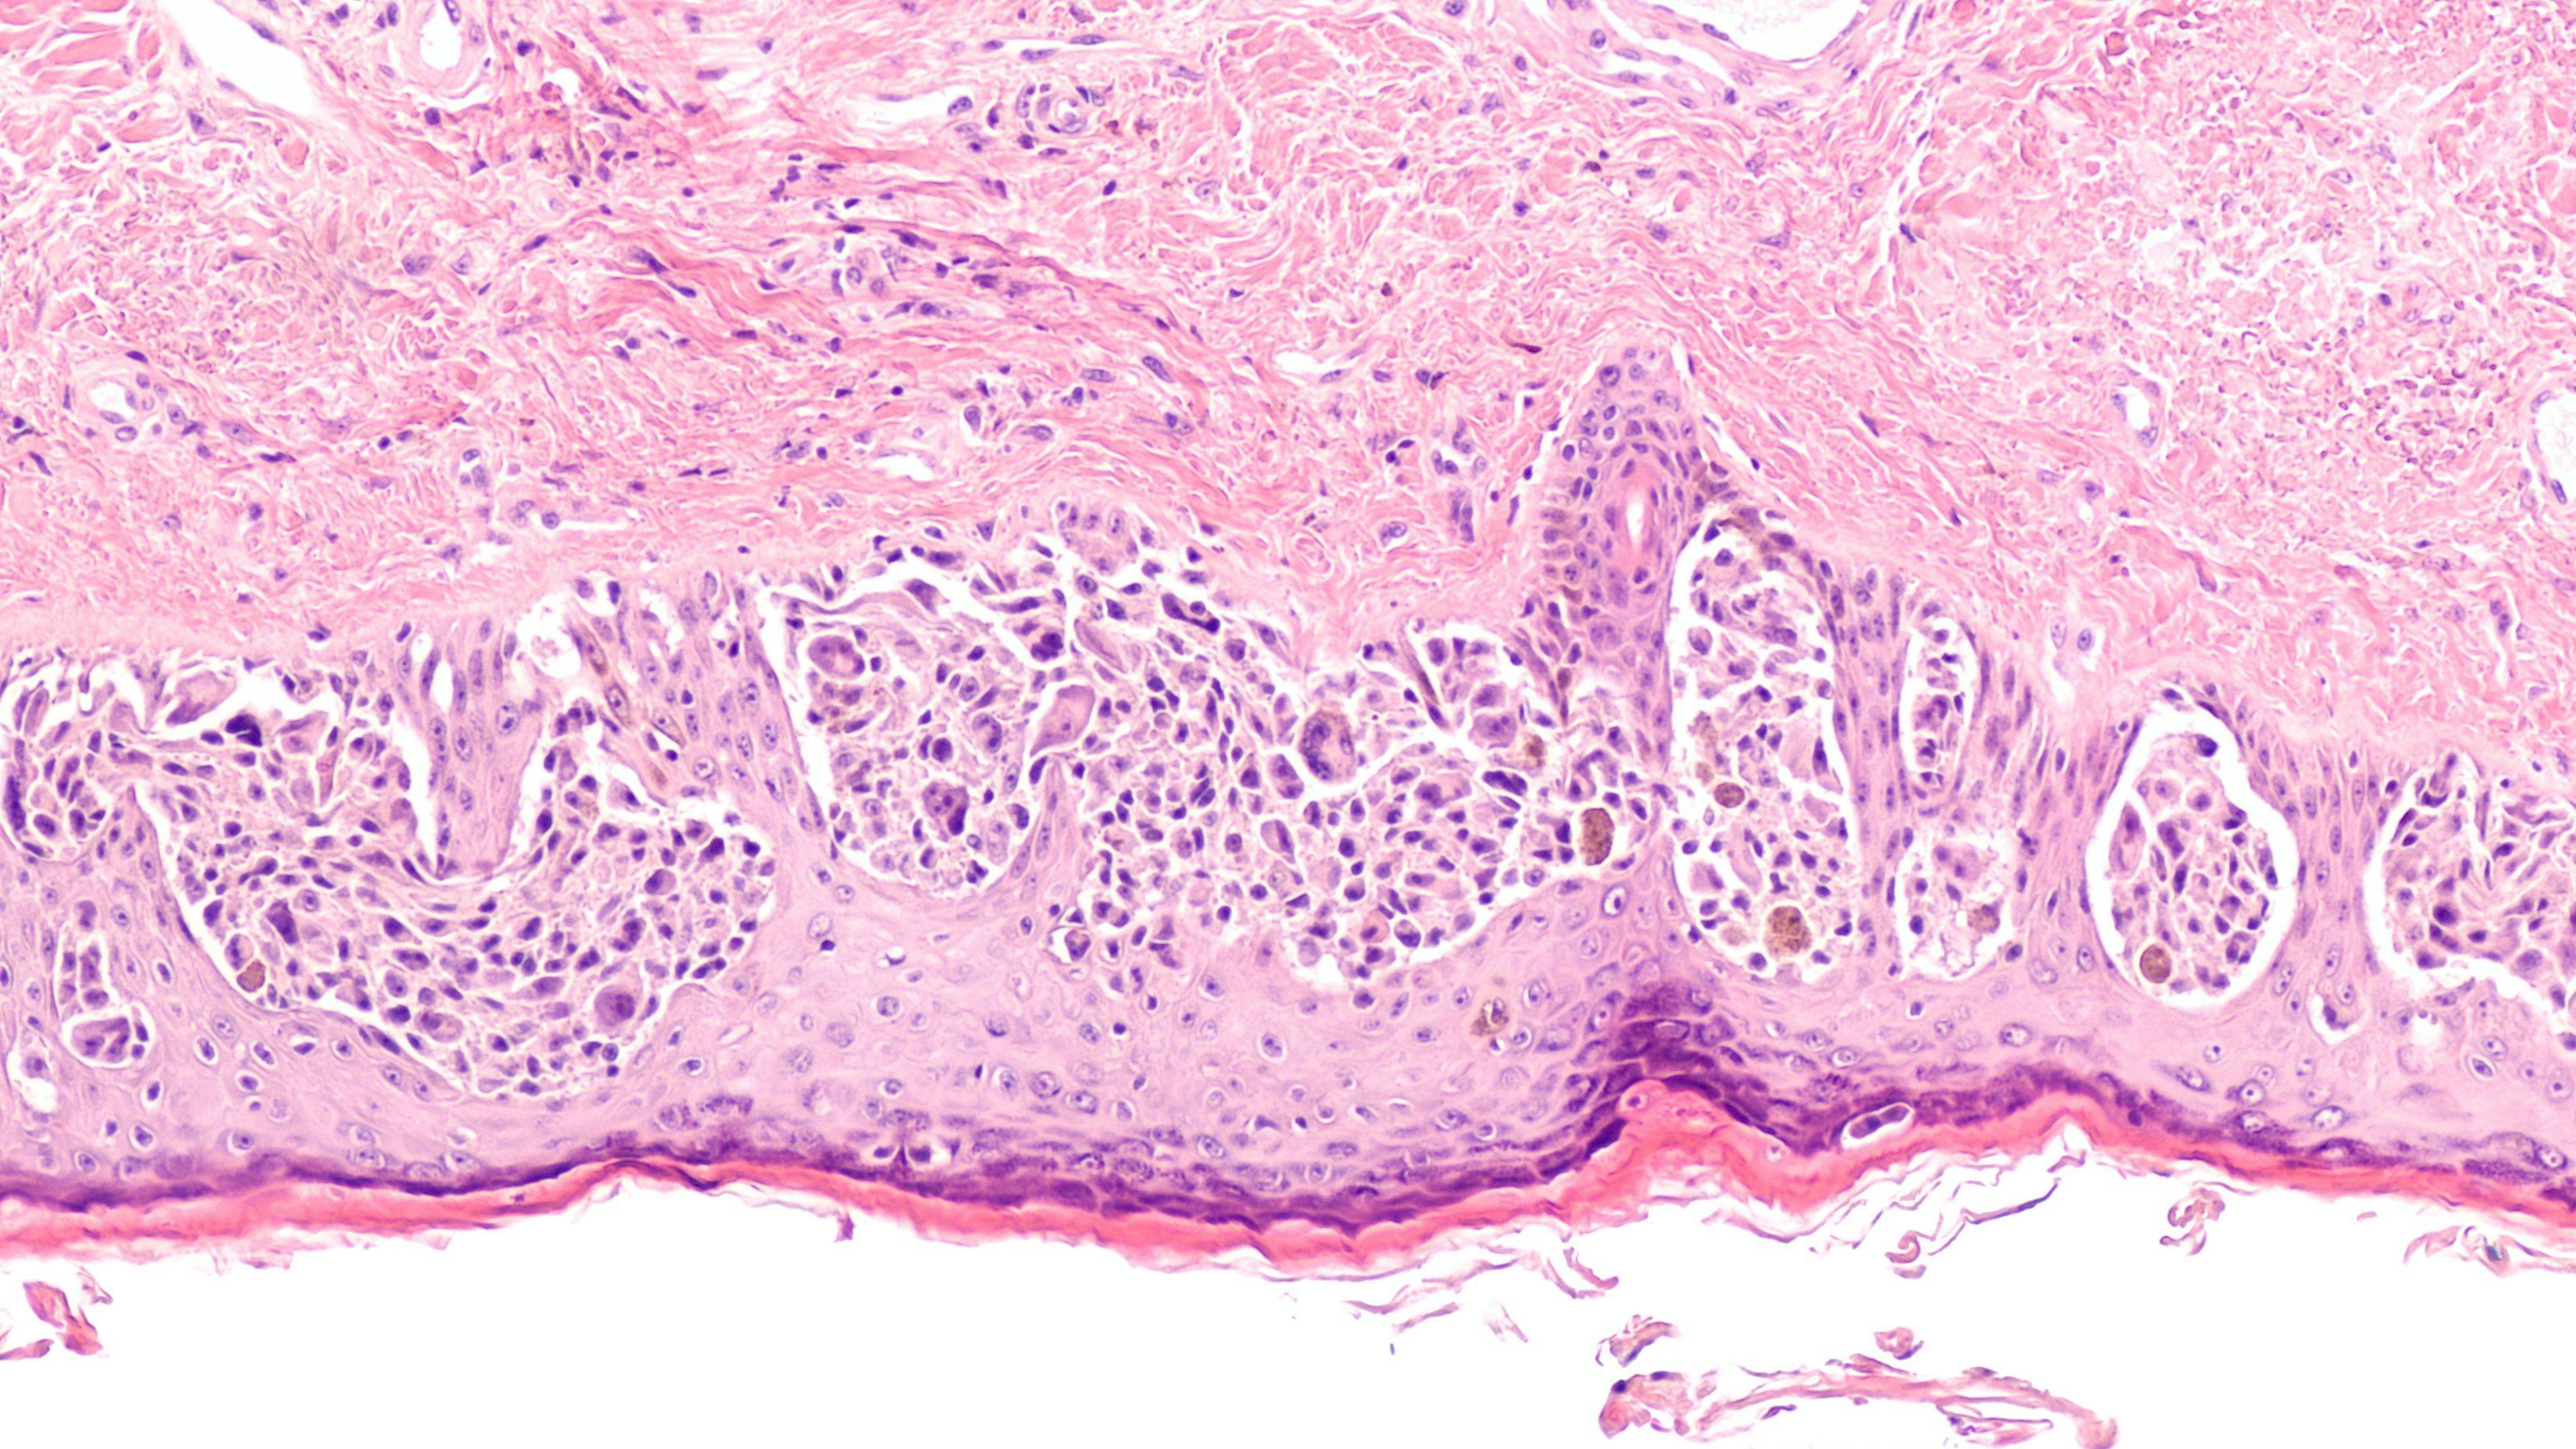 Image of melanoma cells: © David A Litman - stock.adobe.com